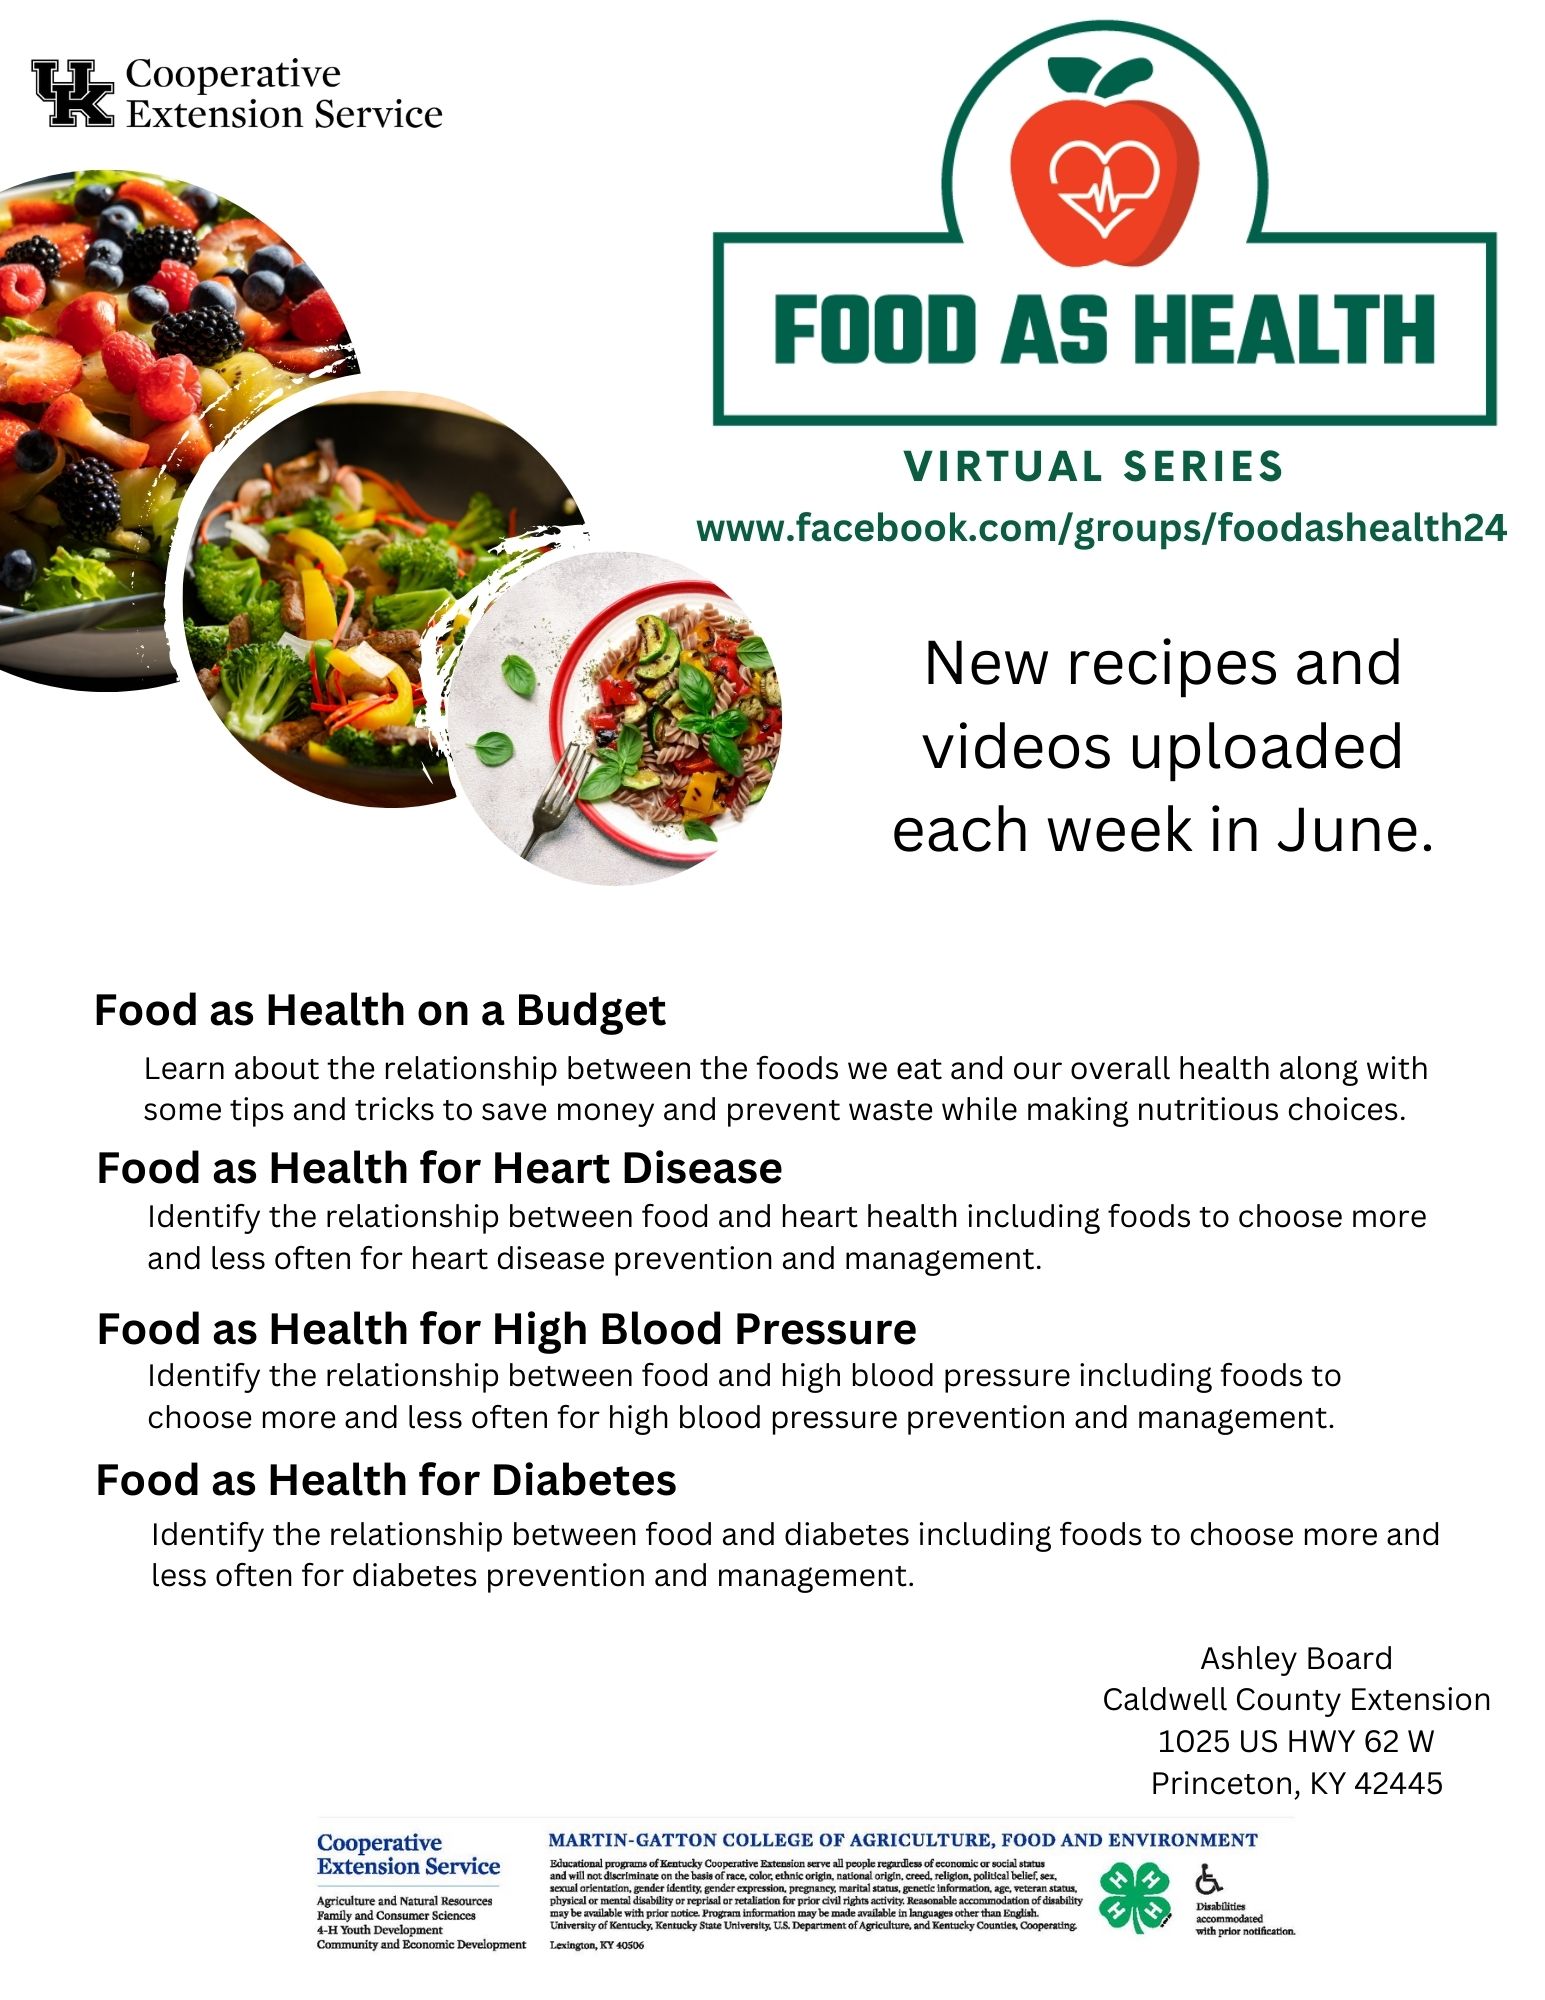 Food as Health Series